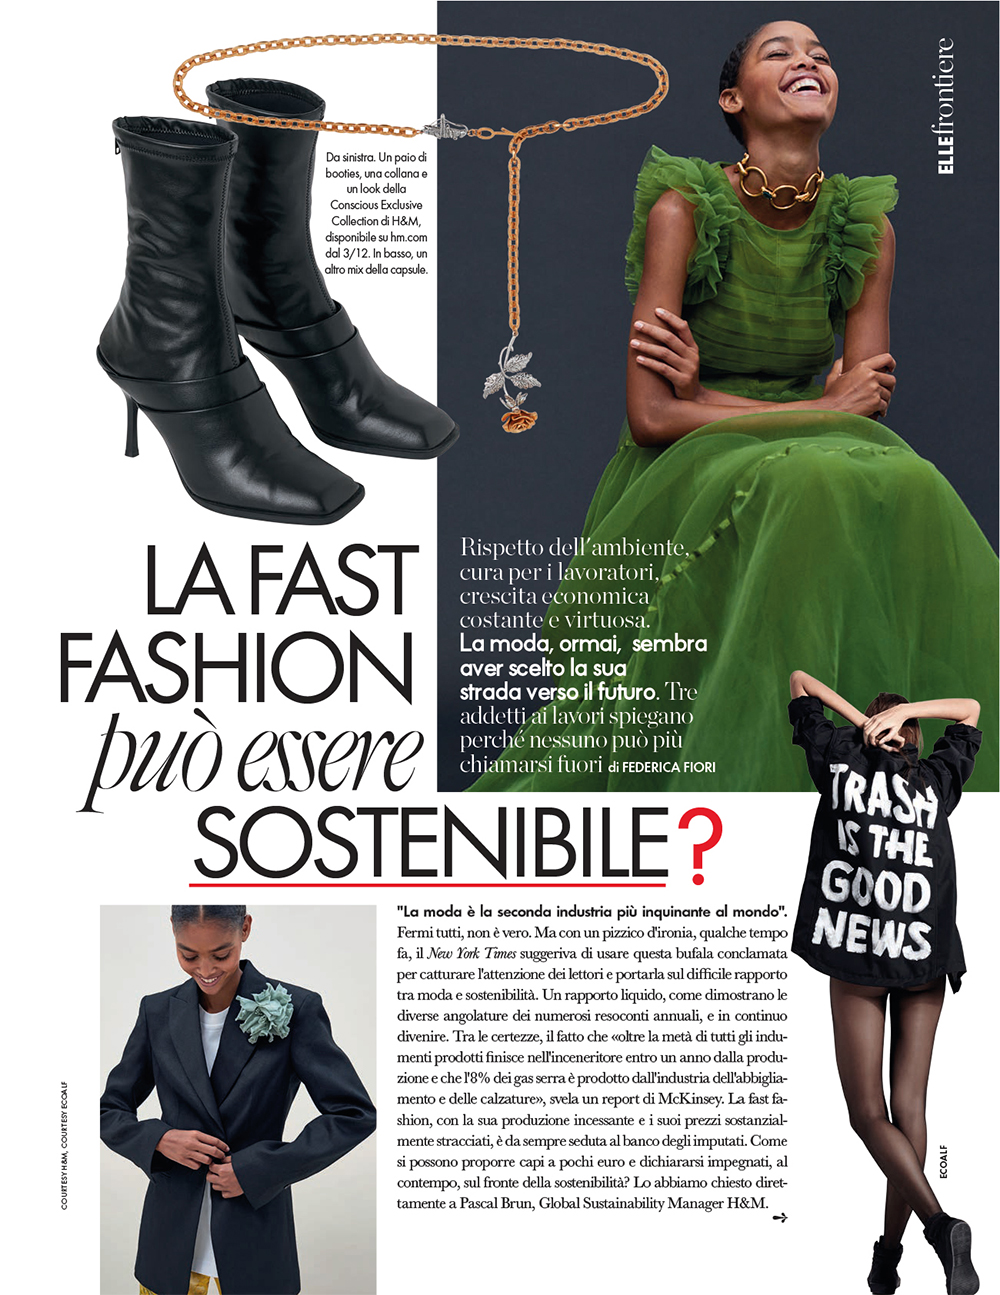 articolo su elle "la fast fashion può essere sostenibile?"